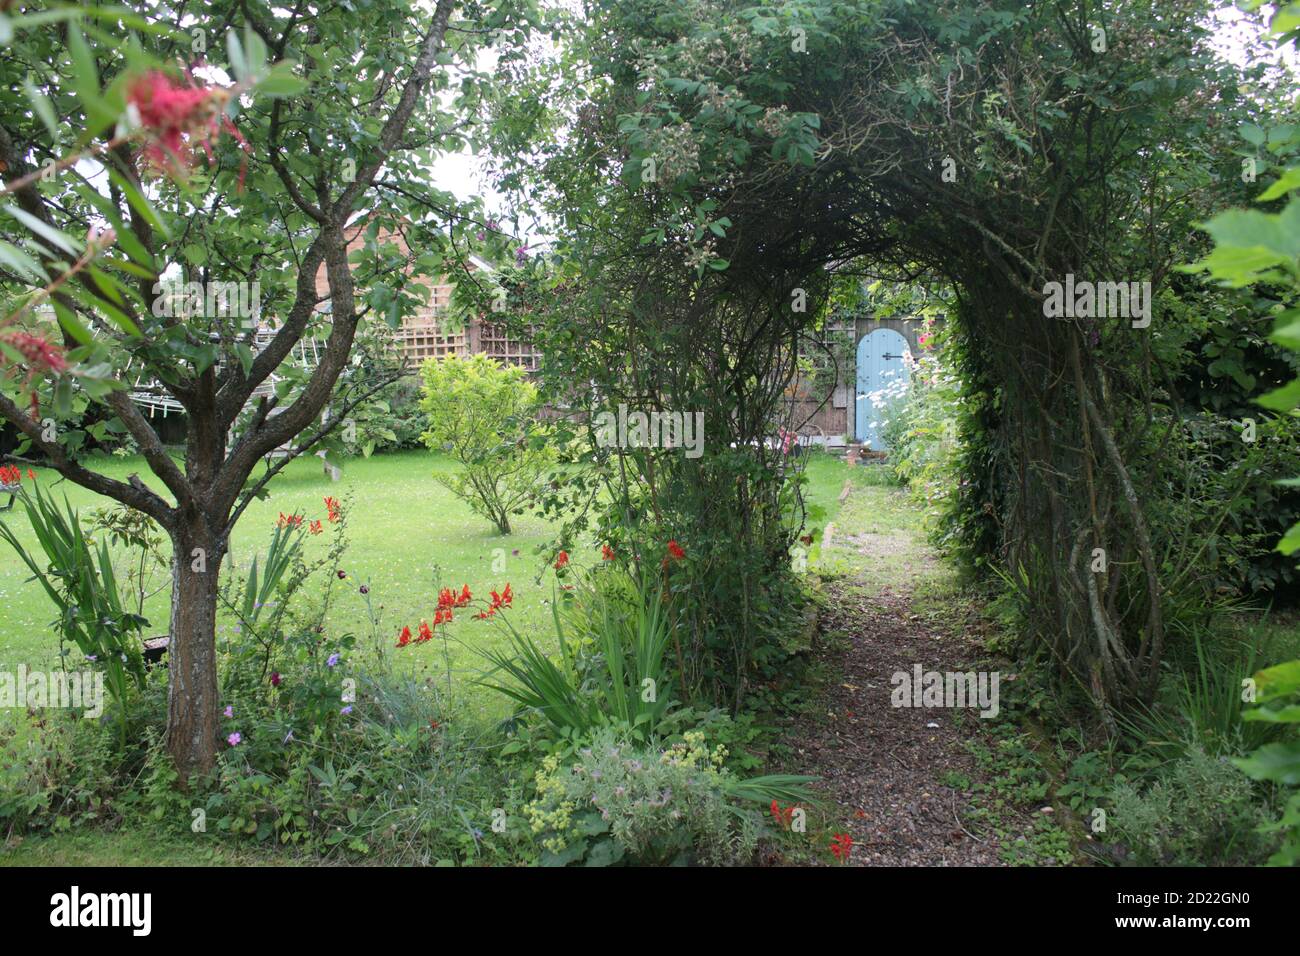 Vista del paisaje en verano jardín rural inglés con peral árbol con fruta lavanda rosa arco arbusto flores hierba césped y plantas y puerta secreta Foto de stock